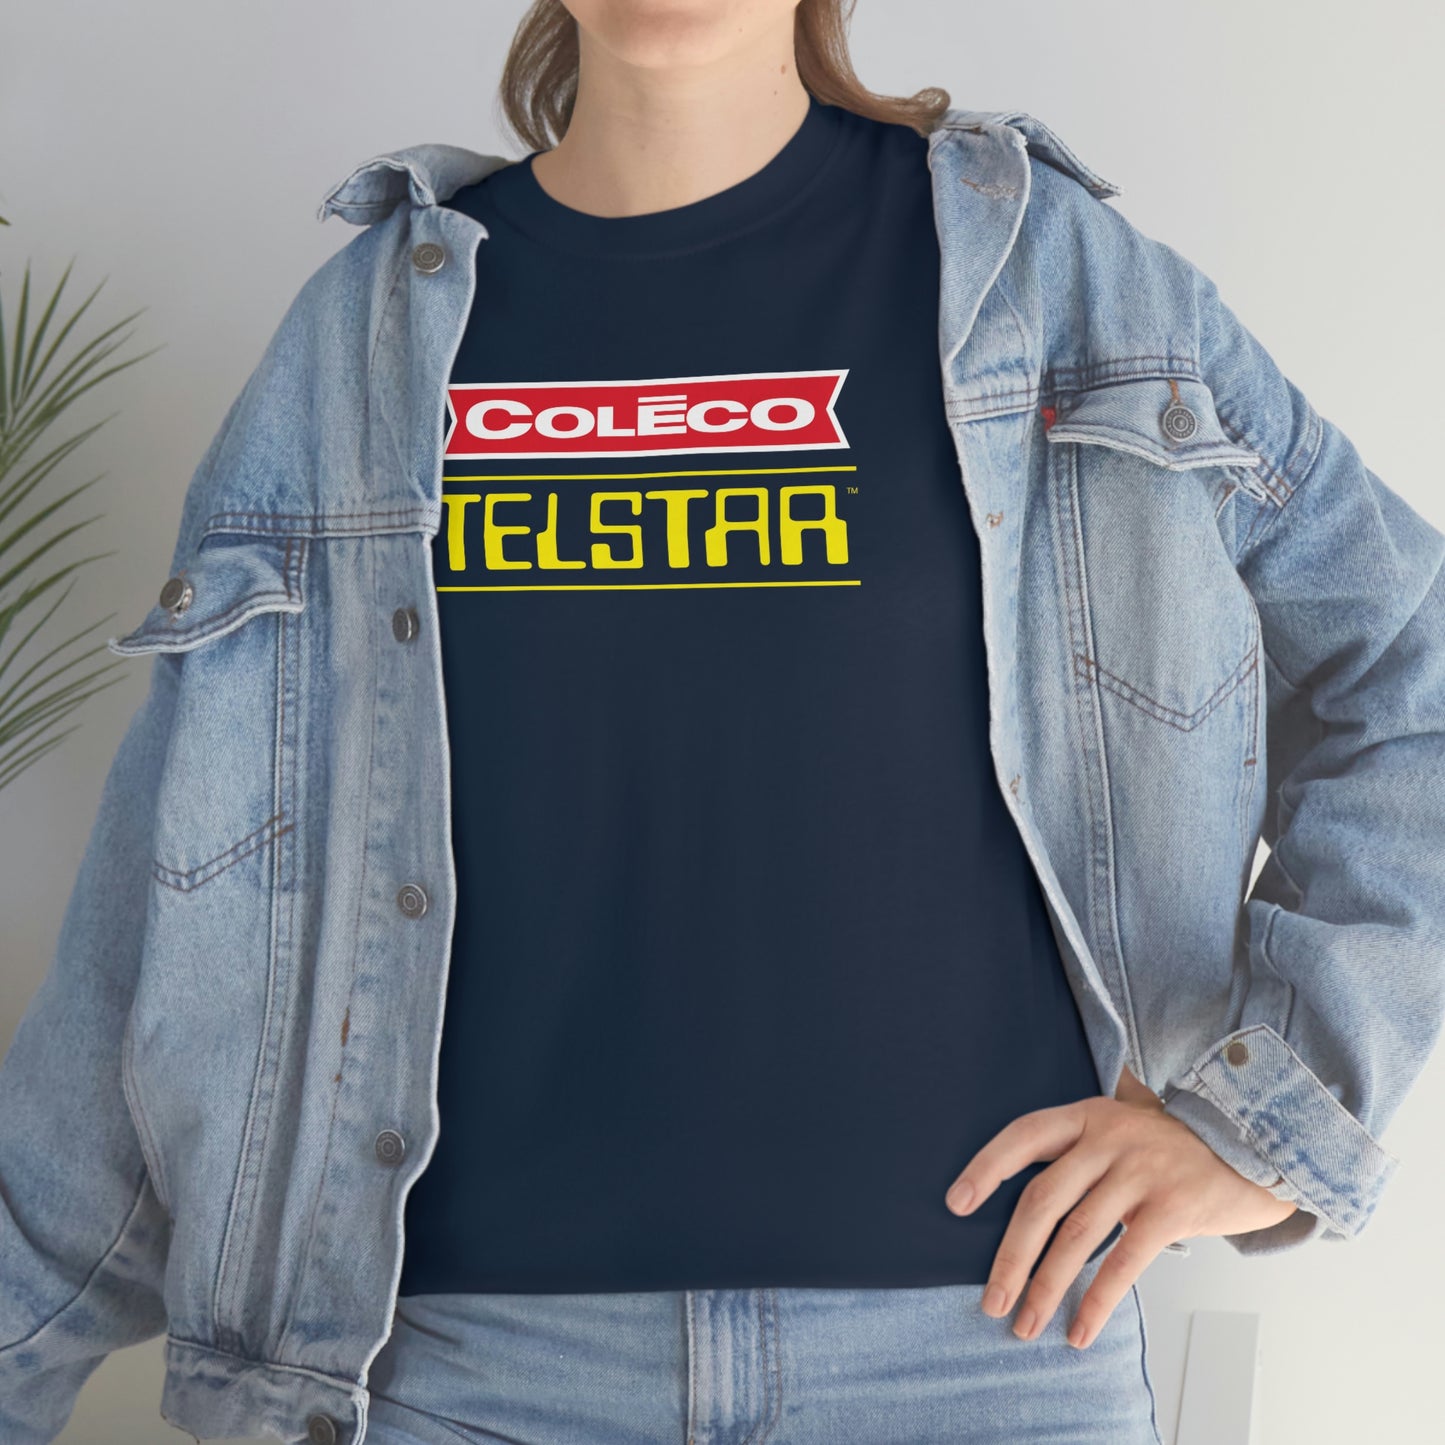 Coleco Telstar T-Shirt